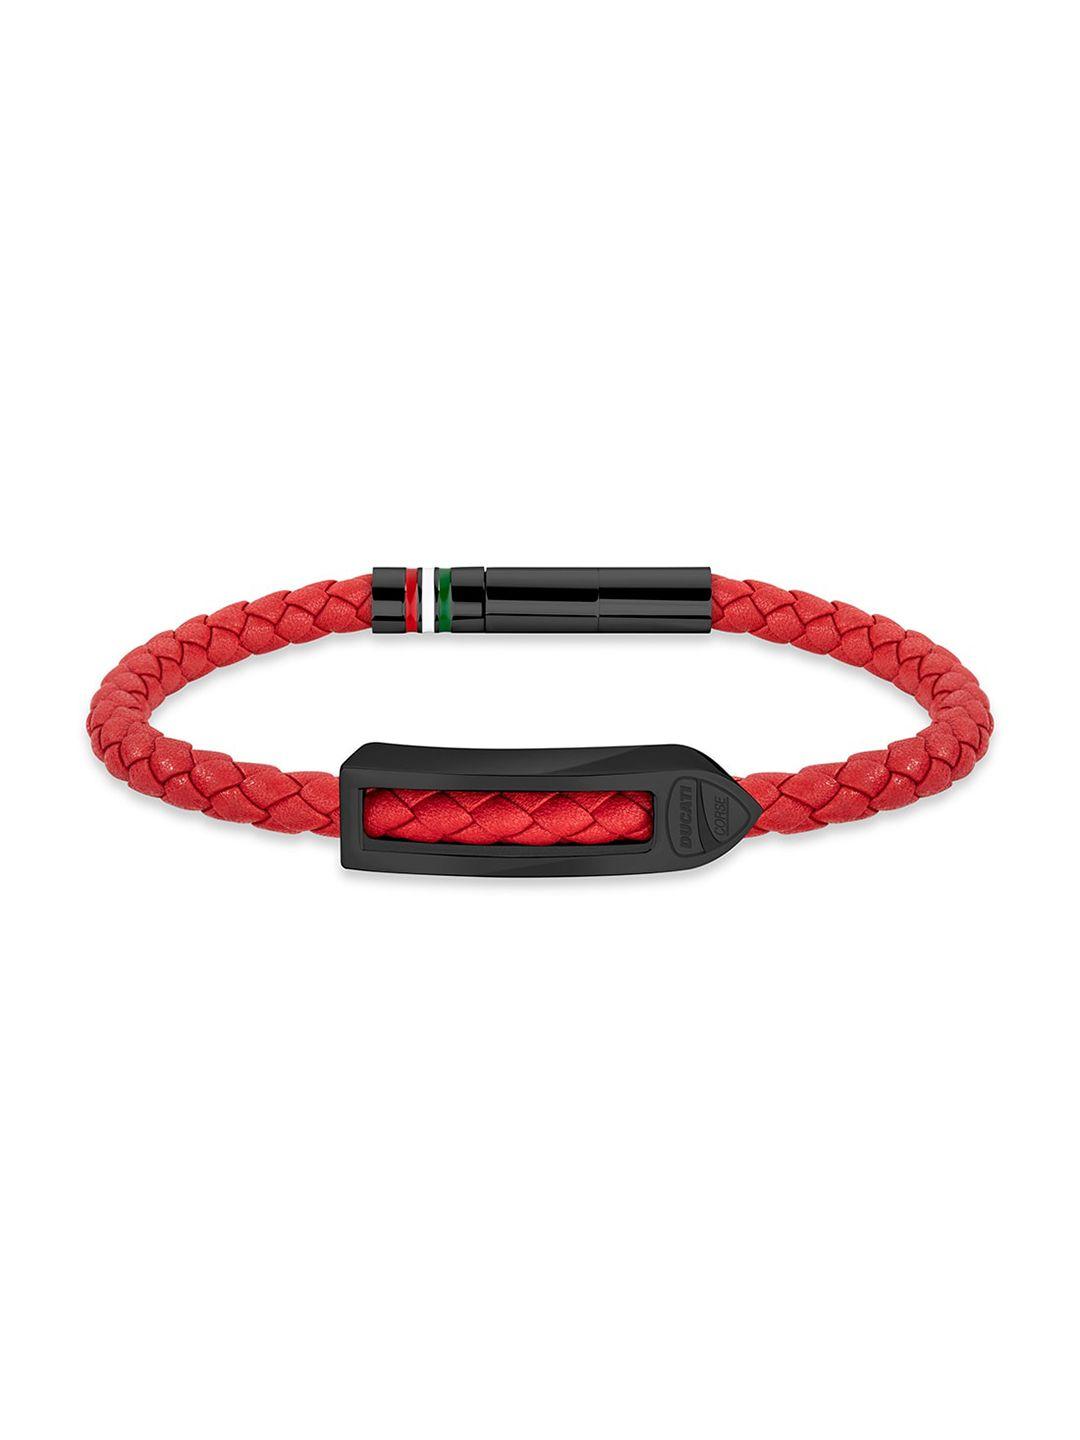 ducati corse men black & red cuff bracelet